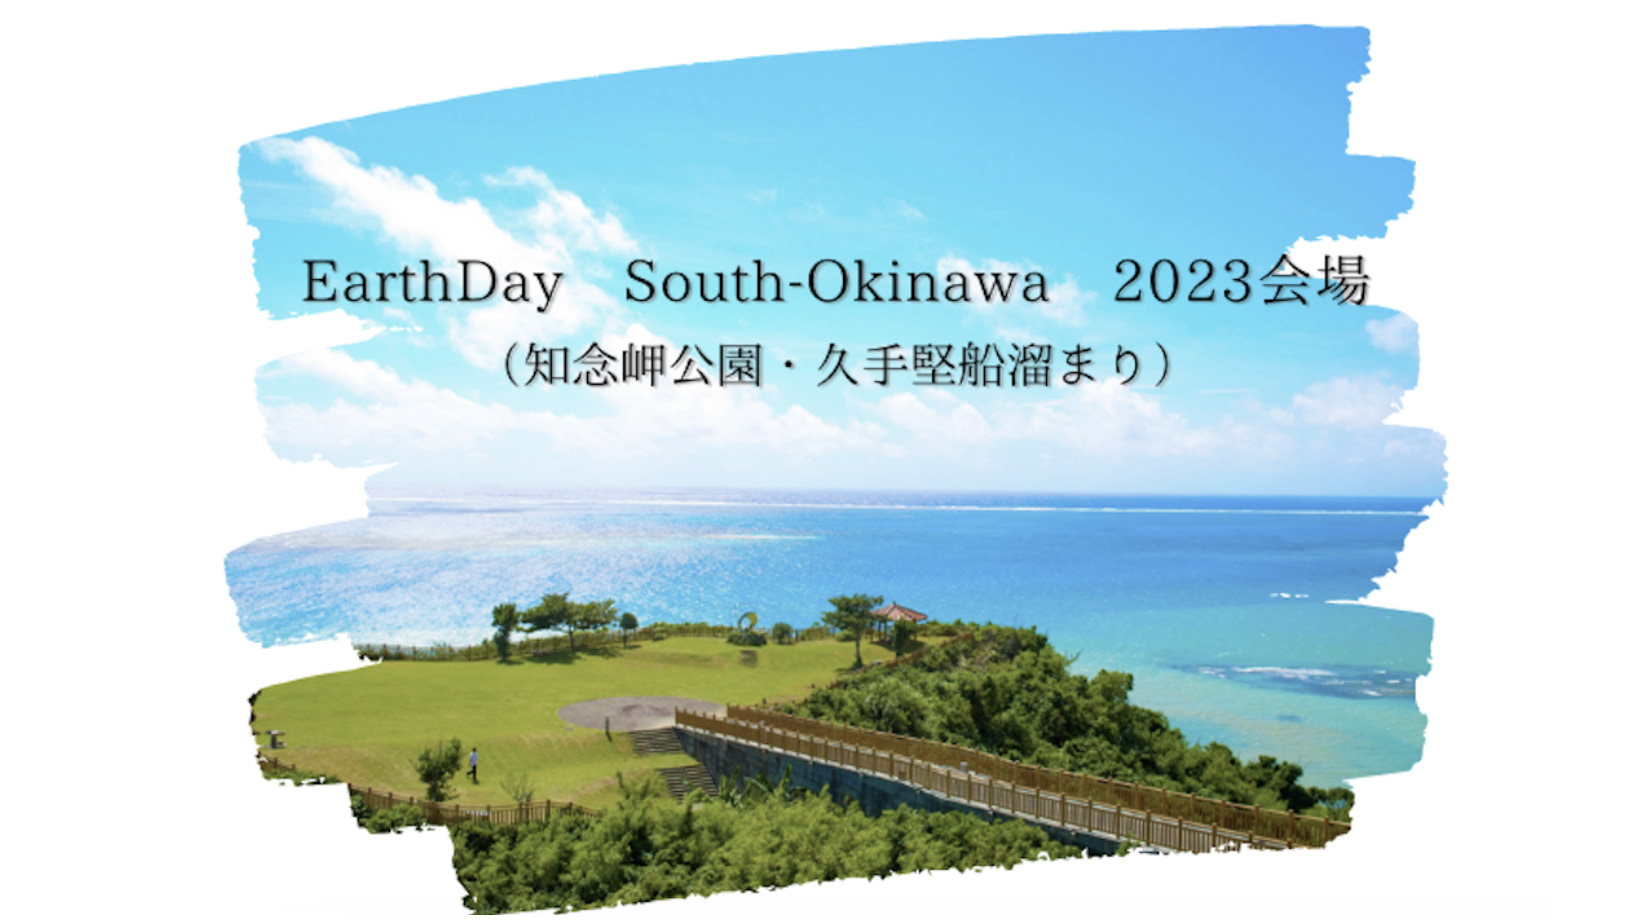 Earthday okinawa 3